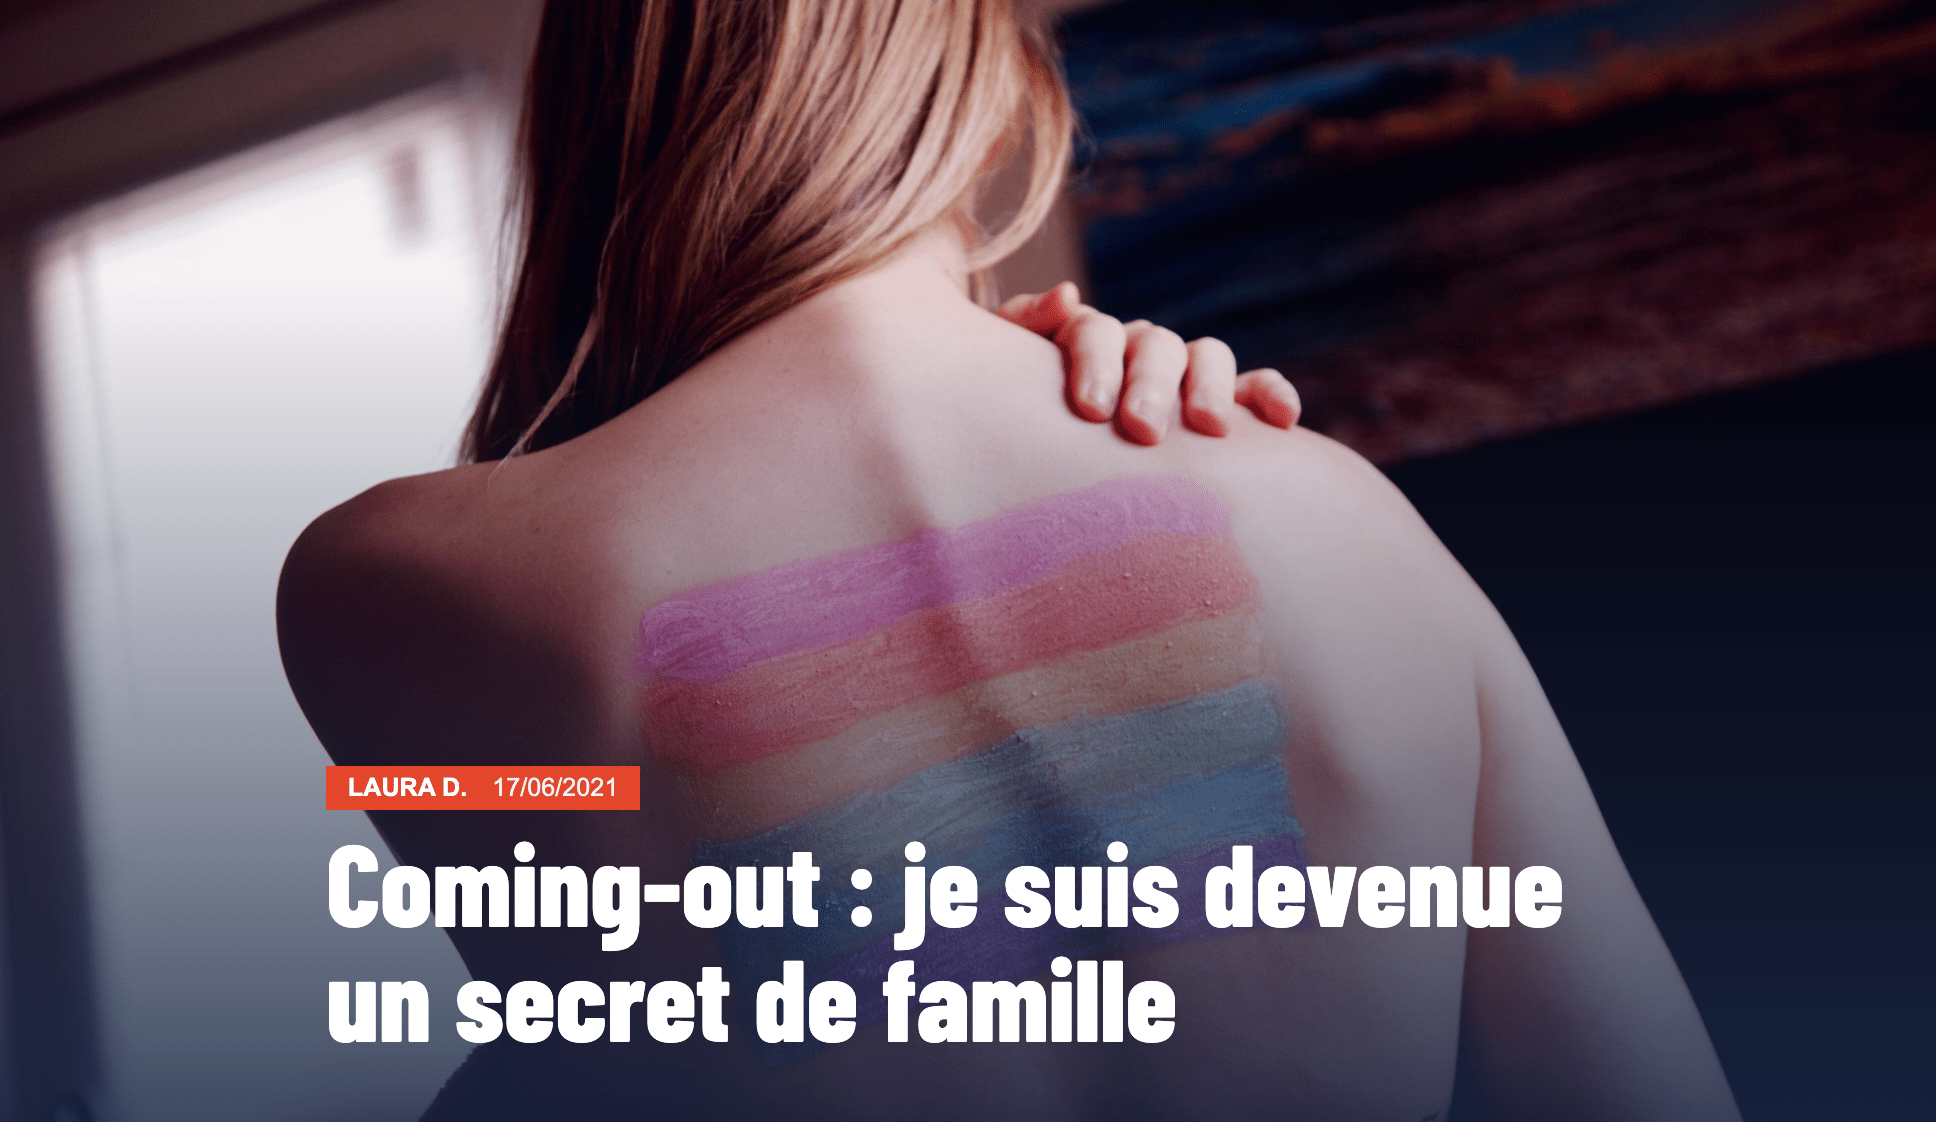 Miniature de l'article "Coming-out : je suis devenue un secret de famille". On perçoit le dos nus d'une jeune femme, penchée vers l'avant. Un drapeau LGBT est maquillé sur sa peau.